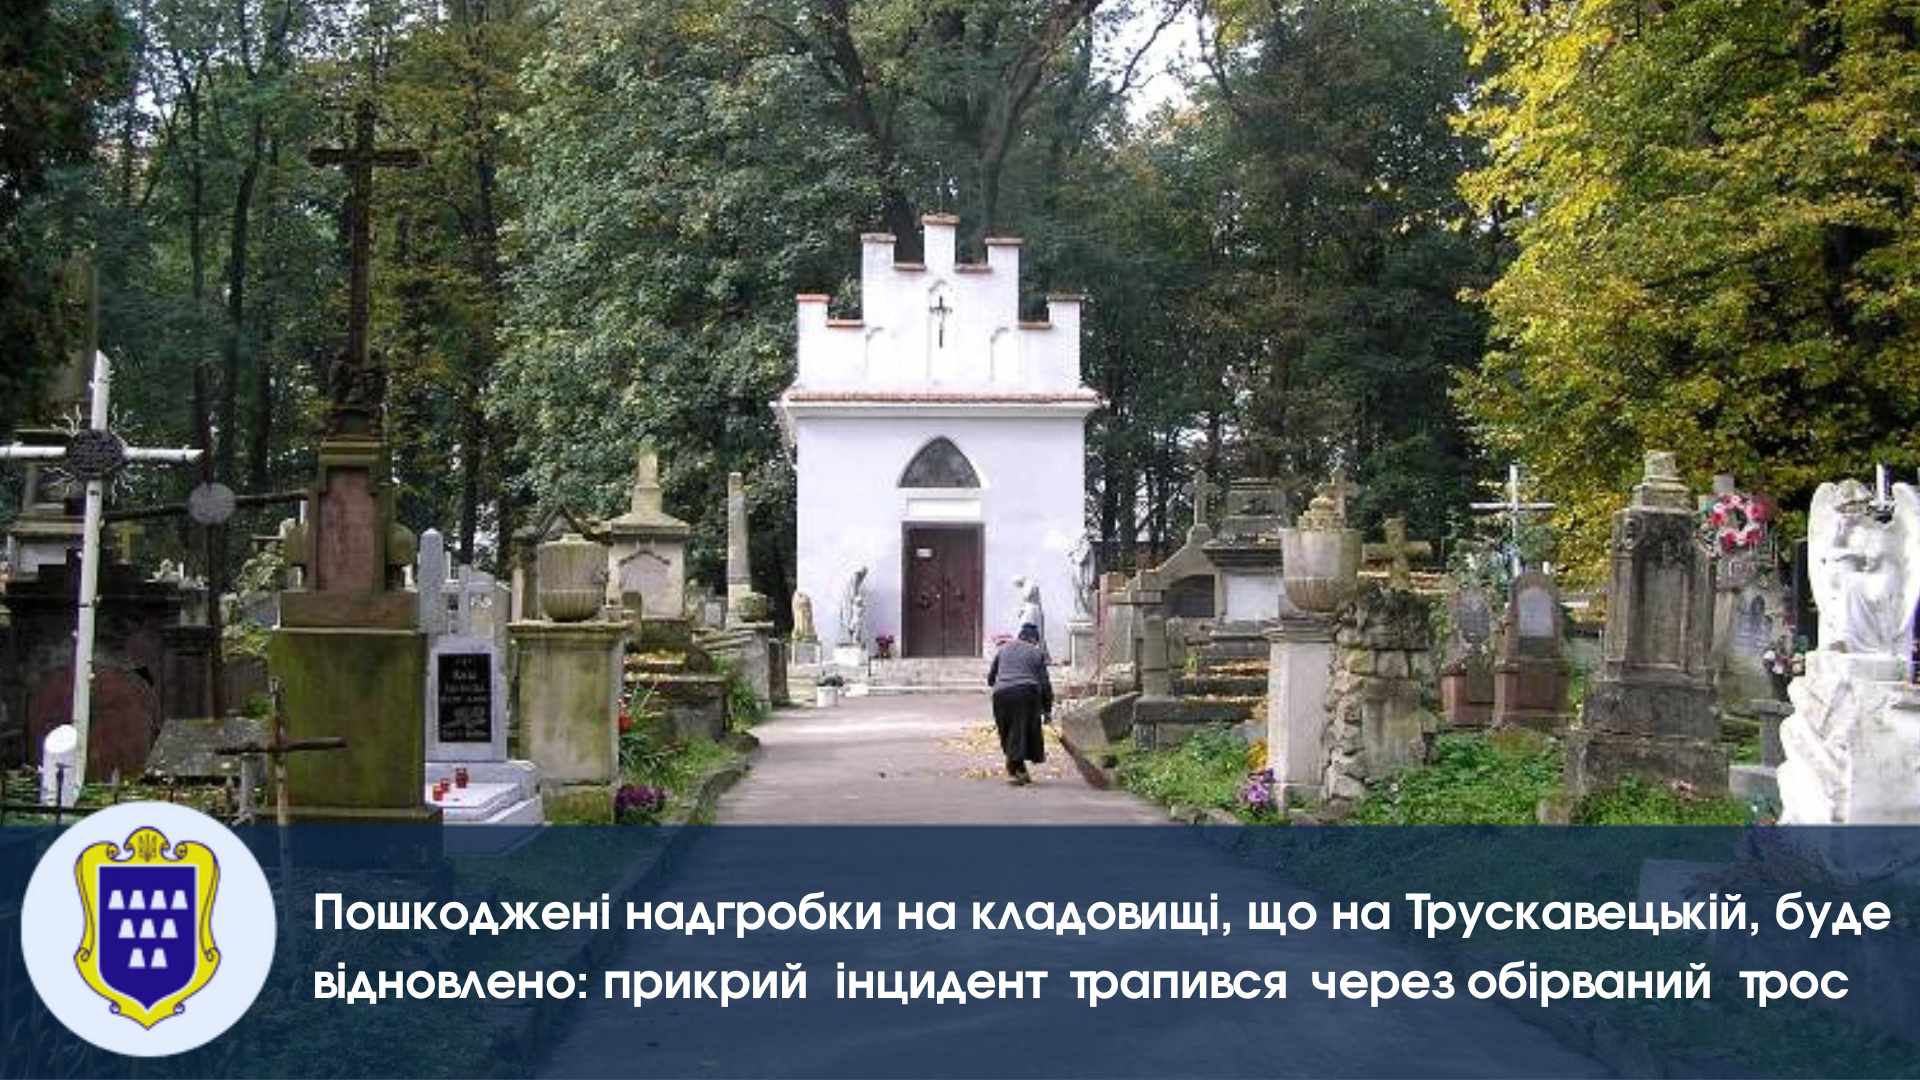 Пошкоджені надгробки на кладовищі, що на Трускавецькій, буде відновлено: прикрий інцидент трапився через обірваний трос